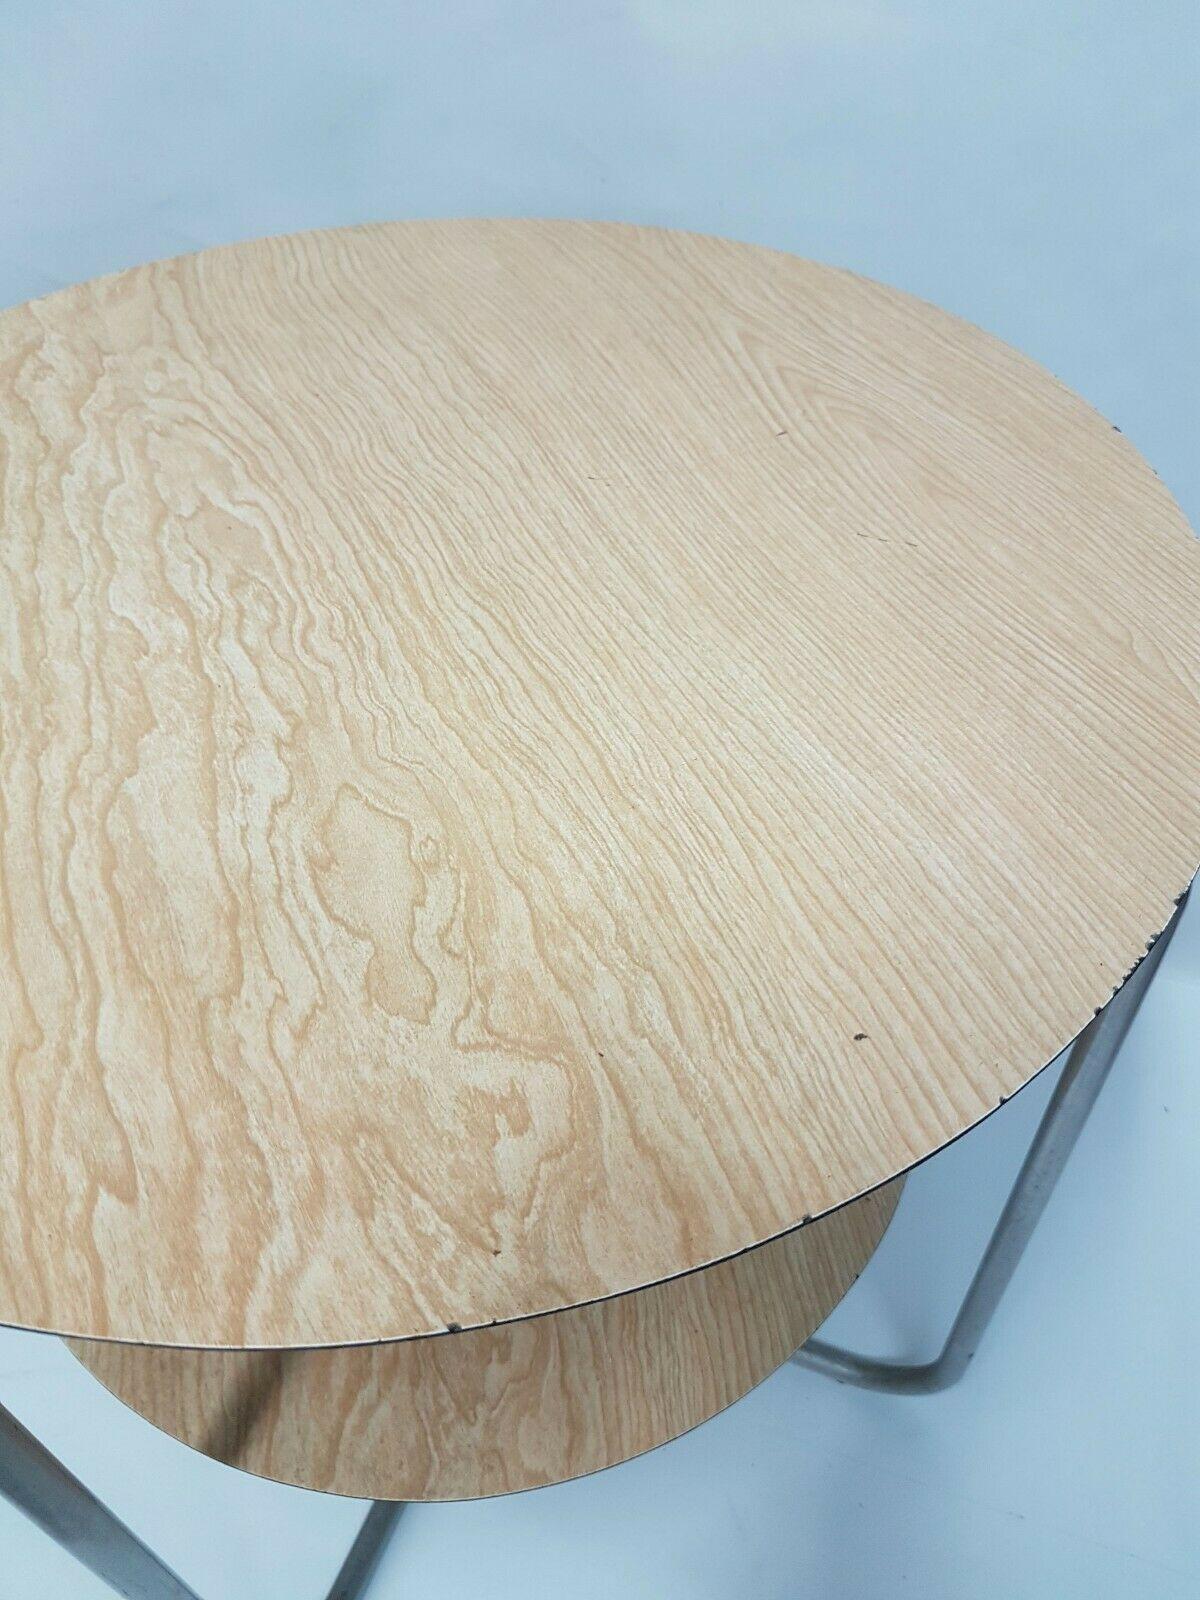 Table basse originale des années 60 avec un beau design italien, avec une double étagère en bois recouverte d'un effet bois formica et un cadre en aluminium avec des pieds incurvés

Il mesure 60 cm de hauteur et le même diamètre de l'étagère